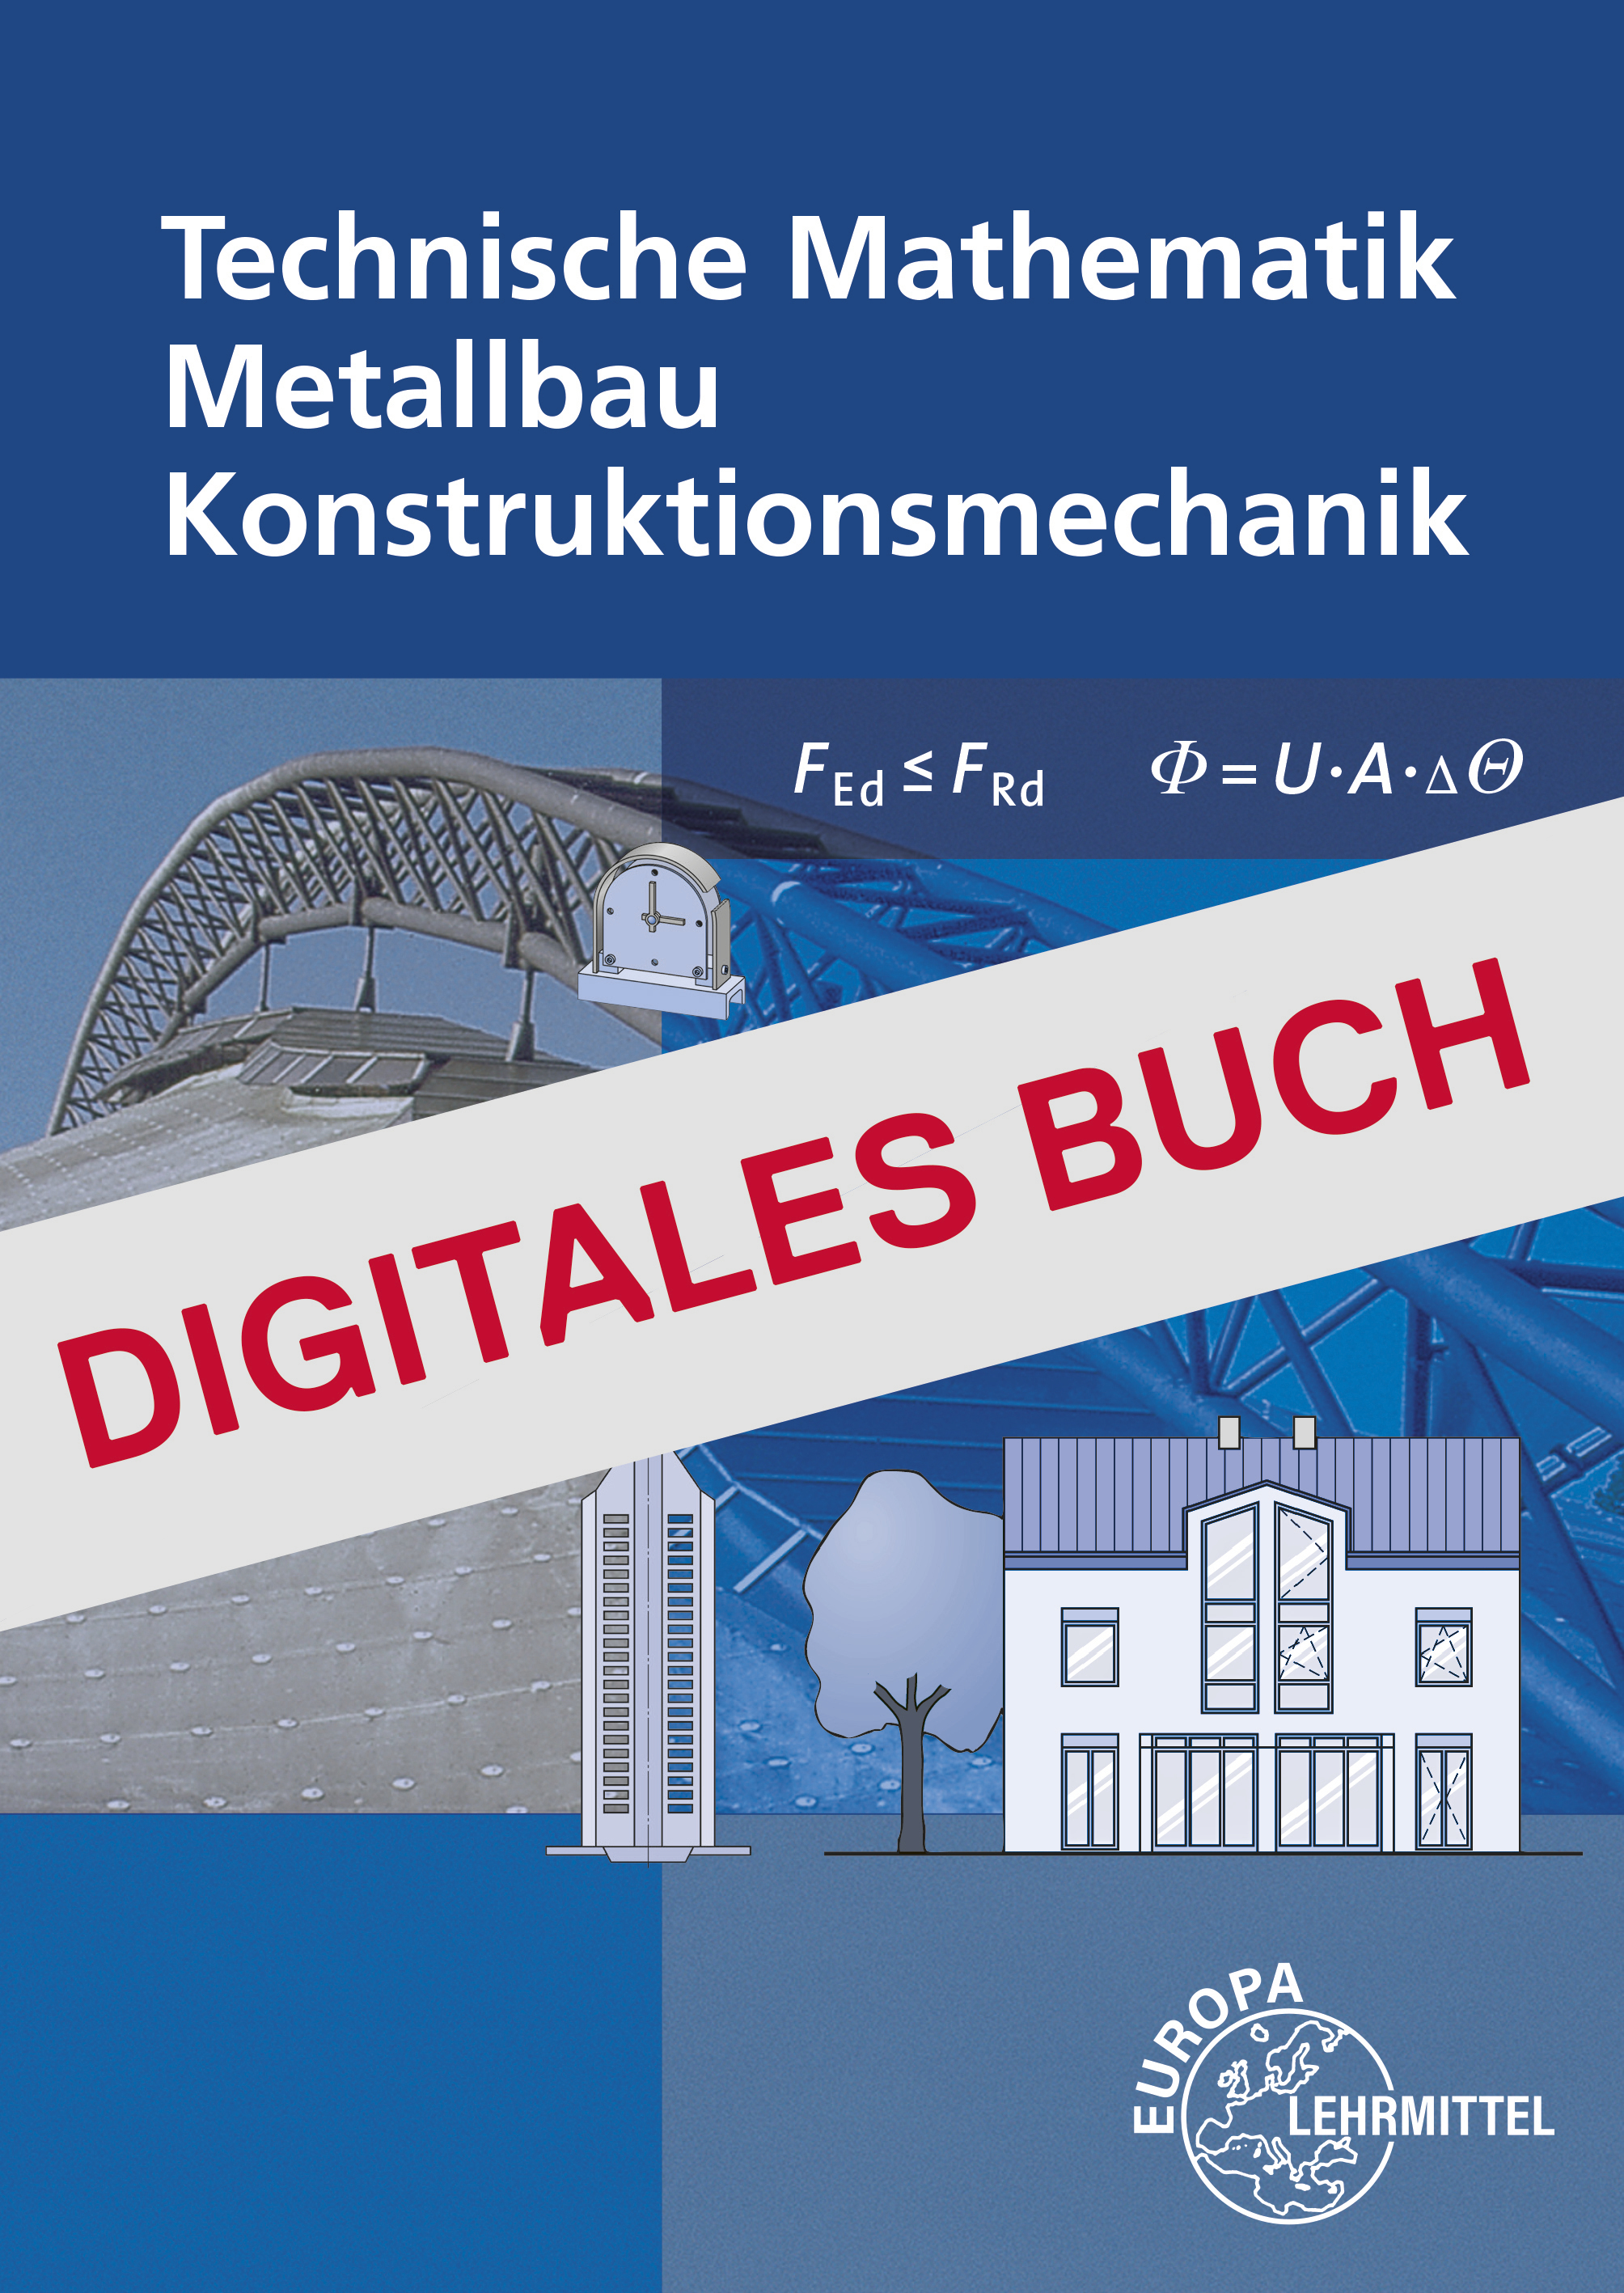 Technische Mathematik für Metallbauberufe - Digitales Buch